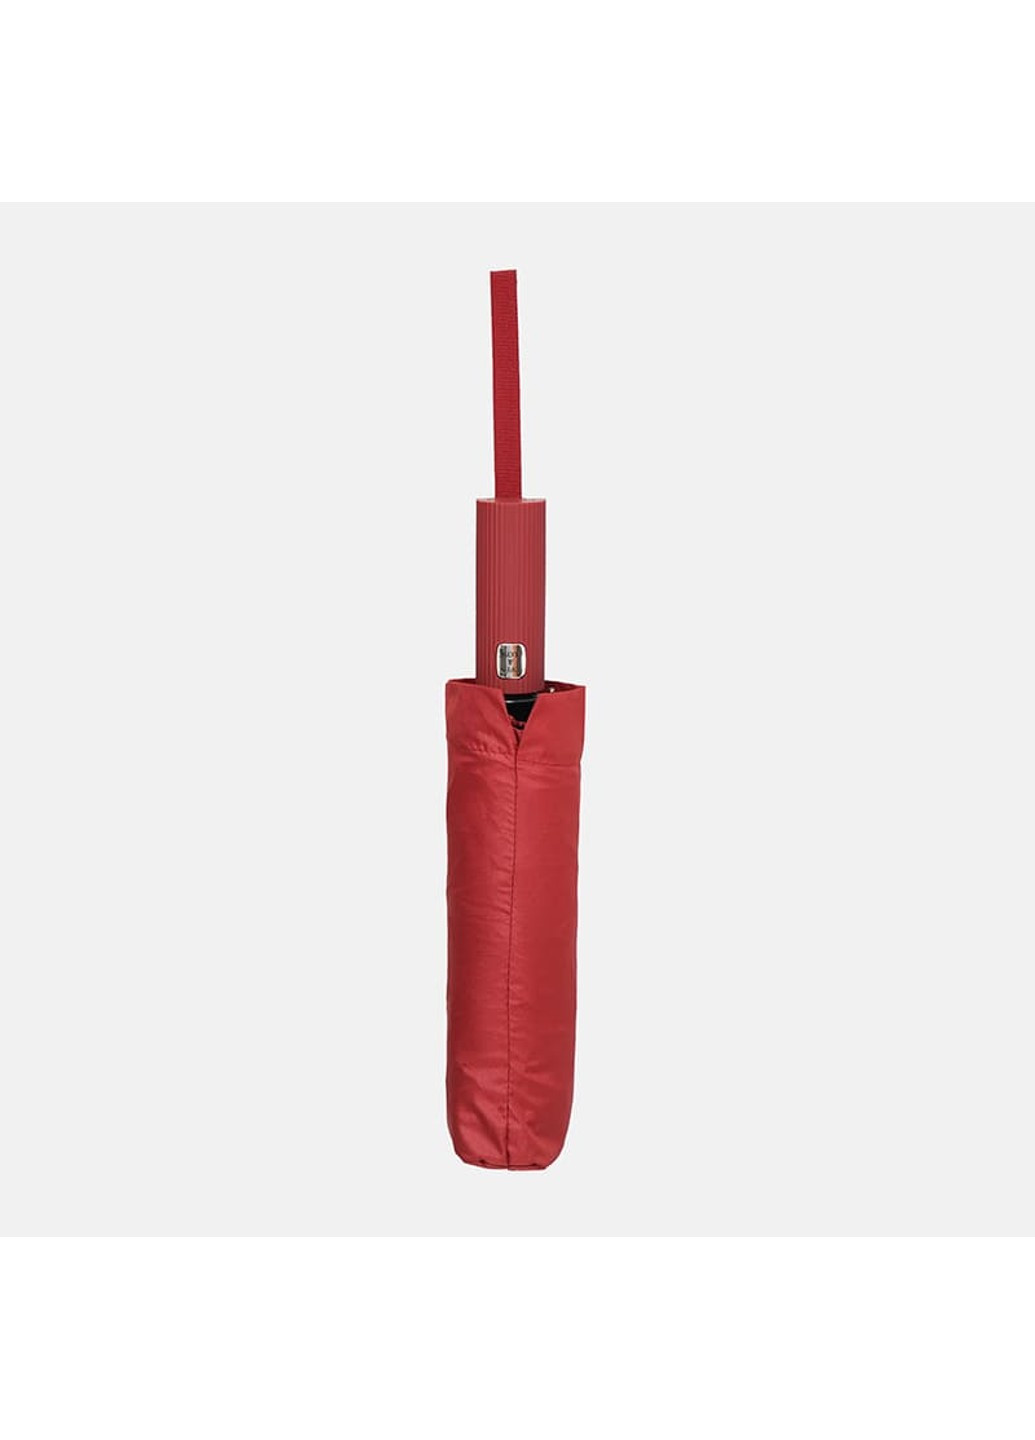 Автоматический зонт CV11665r-red Monsen (266143085)